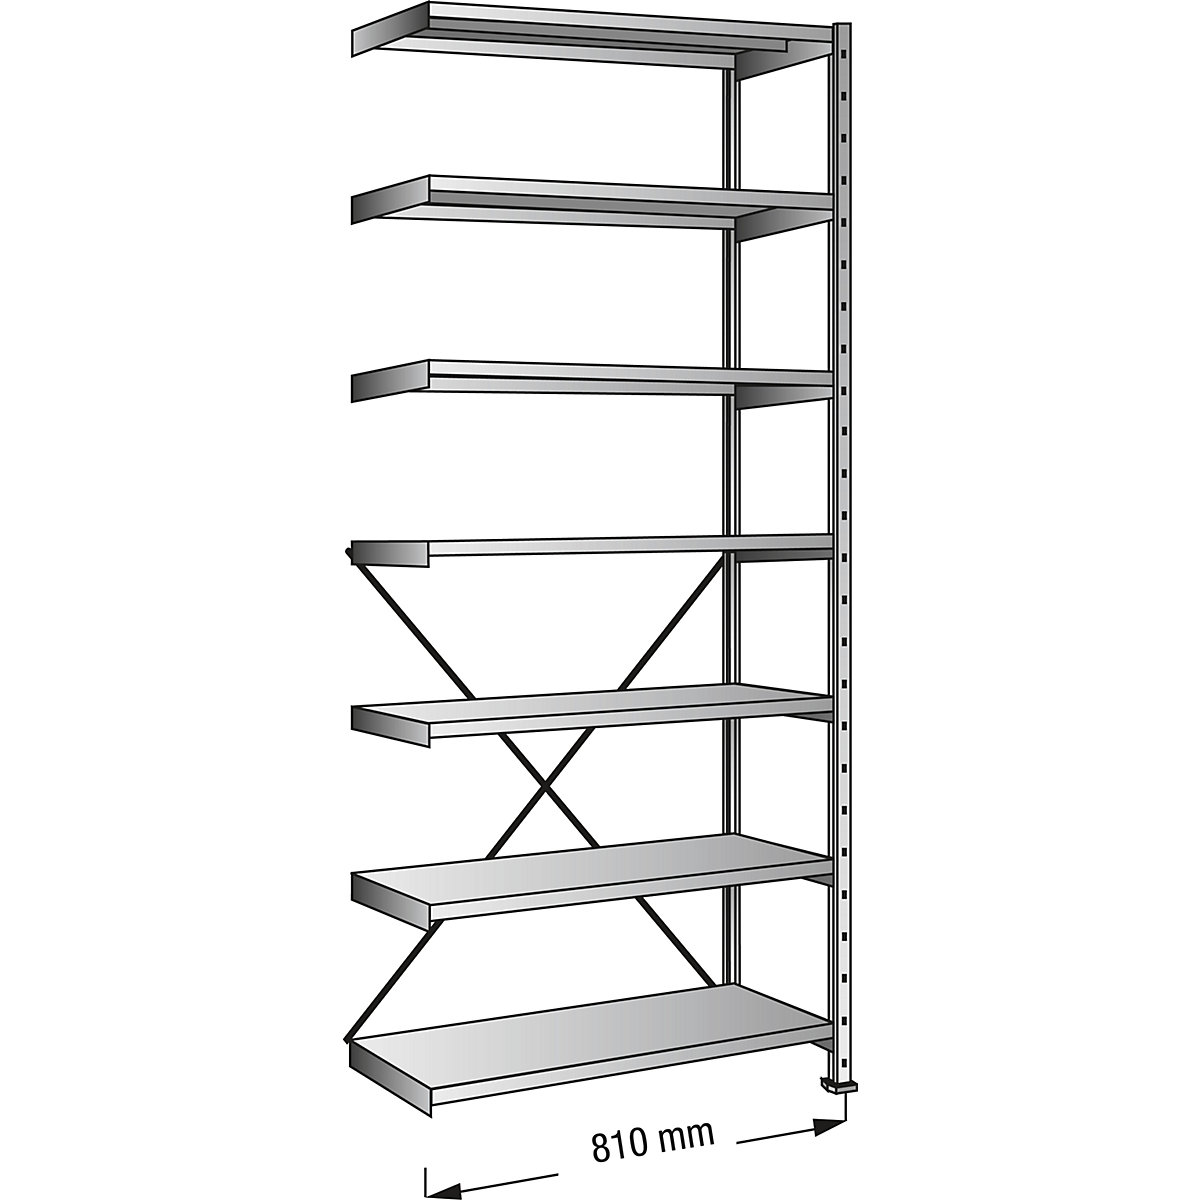 Boltless shelving unit, zinc plated, 7 shelves, height 2640 mm, shelf width 800 mm, depth 800 mm, extension shelf unit